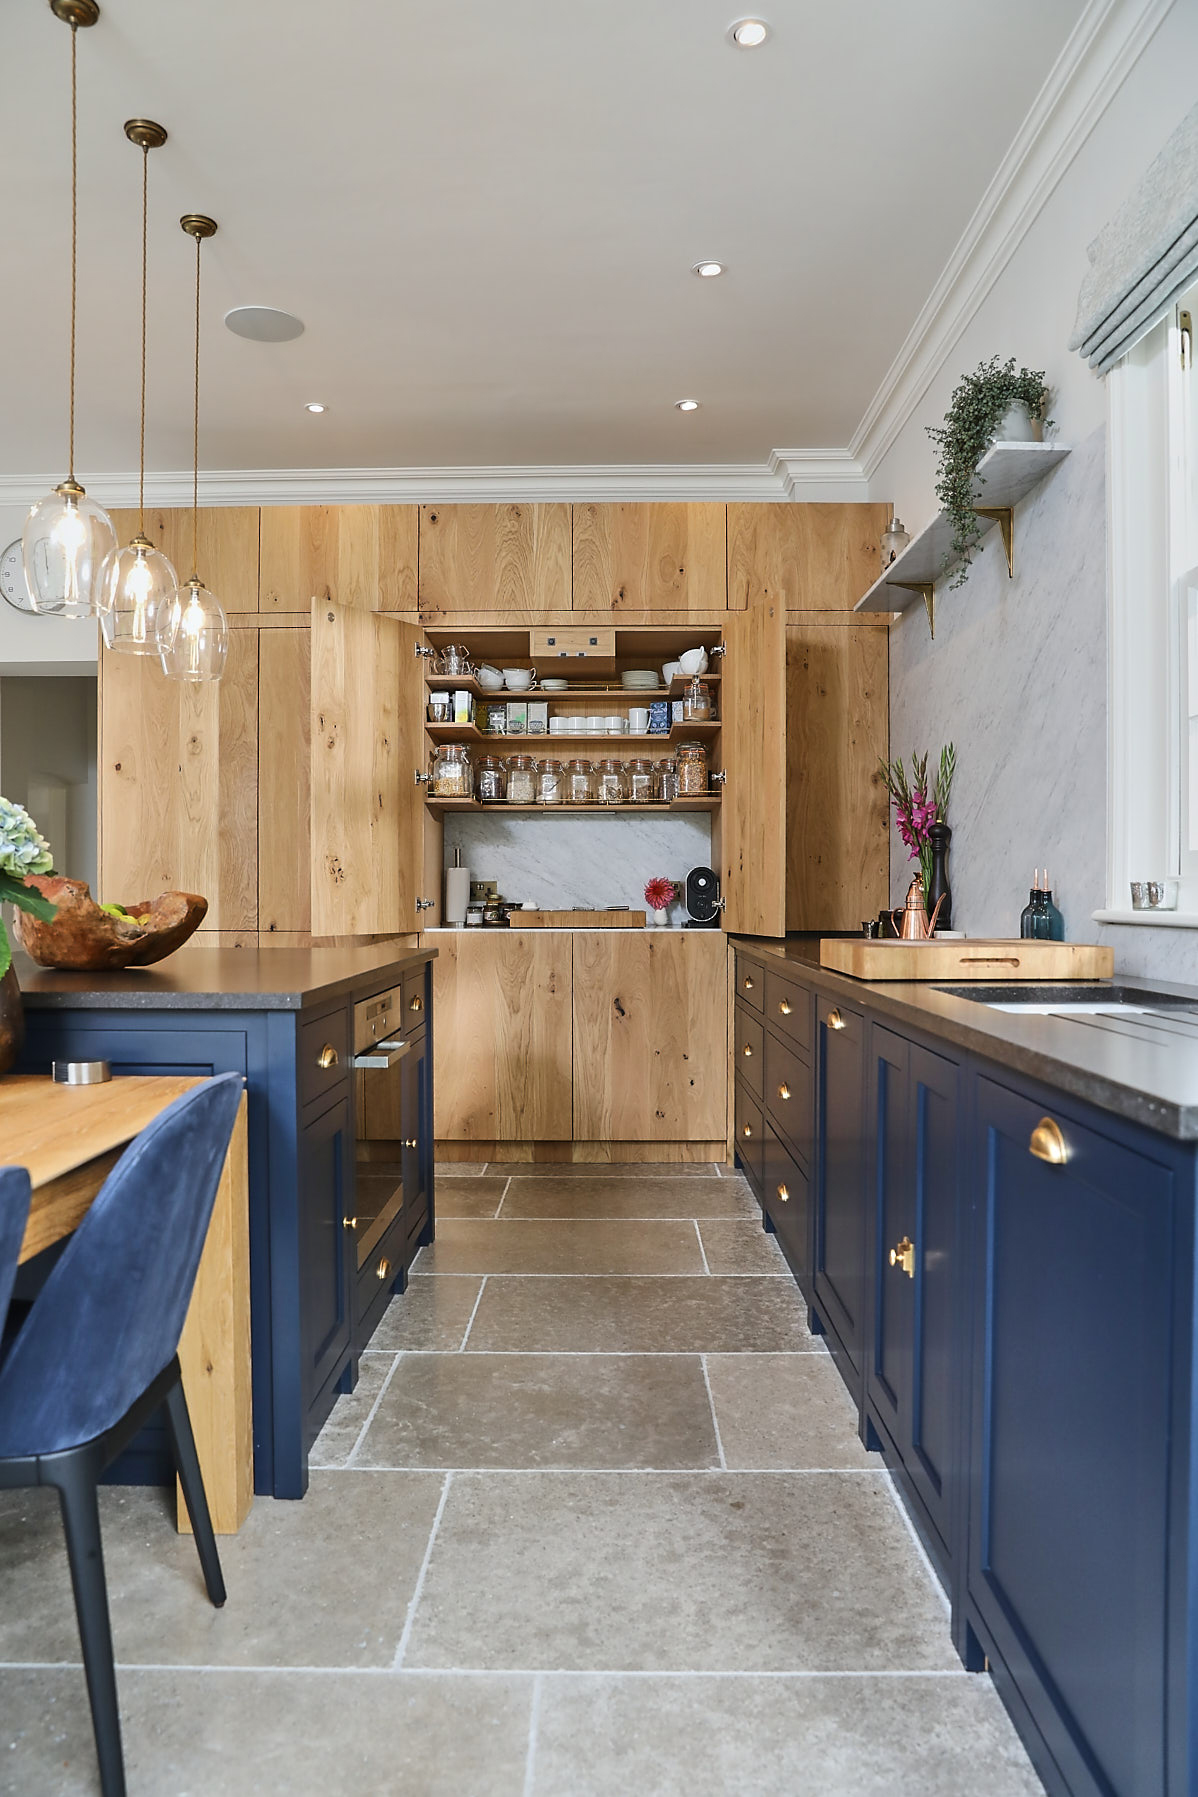 Bespoke kitchen with hidden larder cupboard in tall oak units